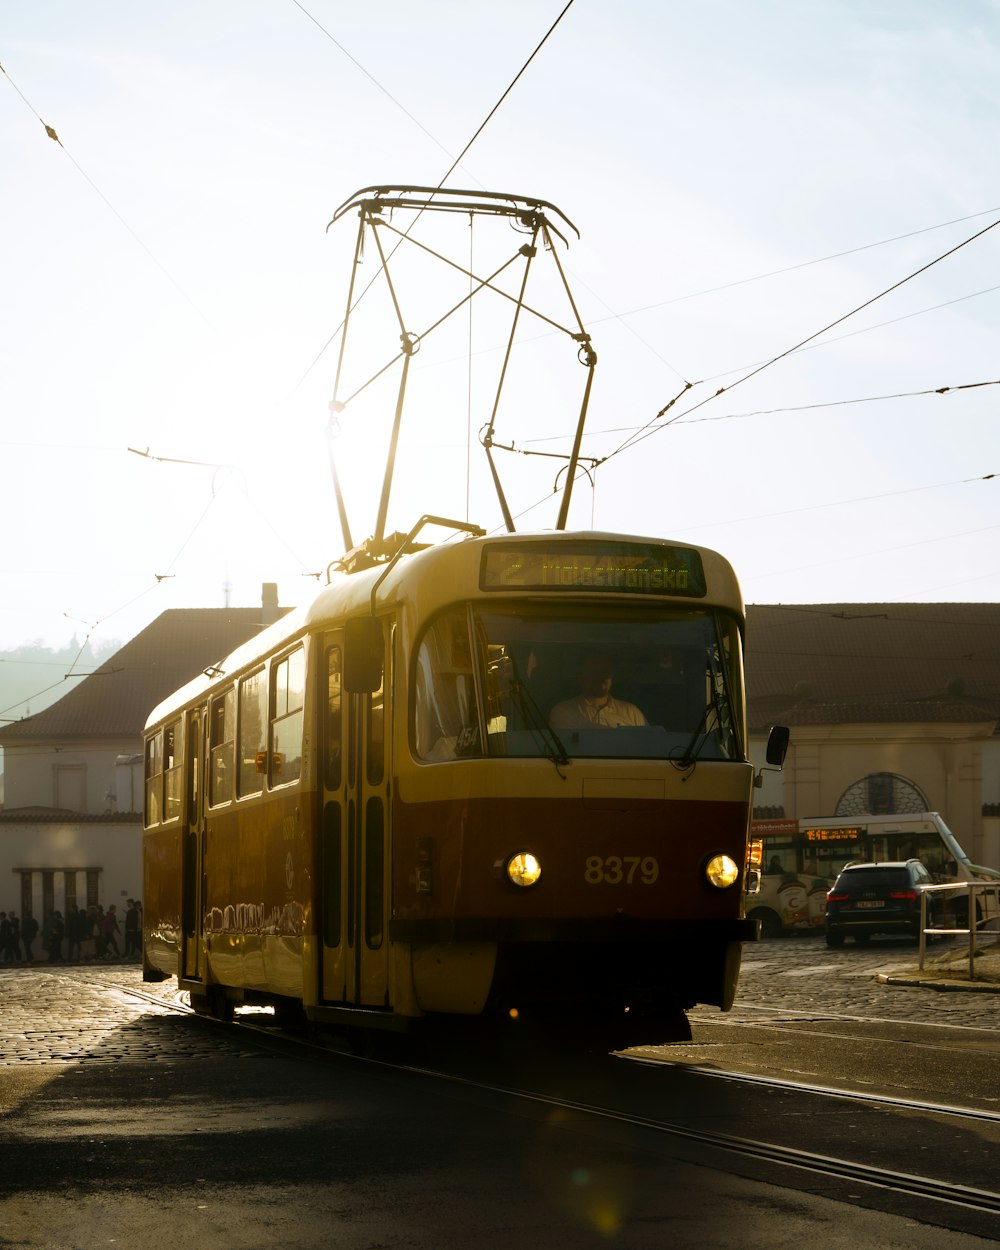 Un tranvía amarillo y rojo viajando por una calle